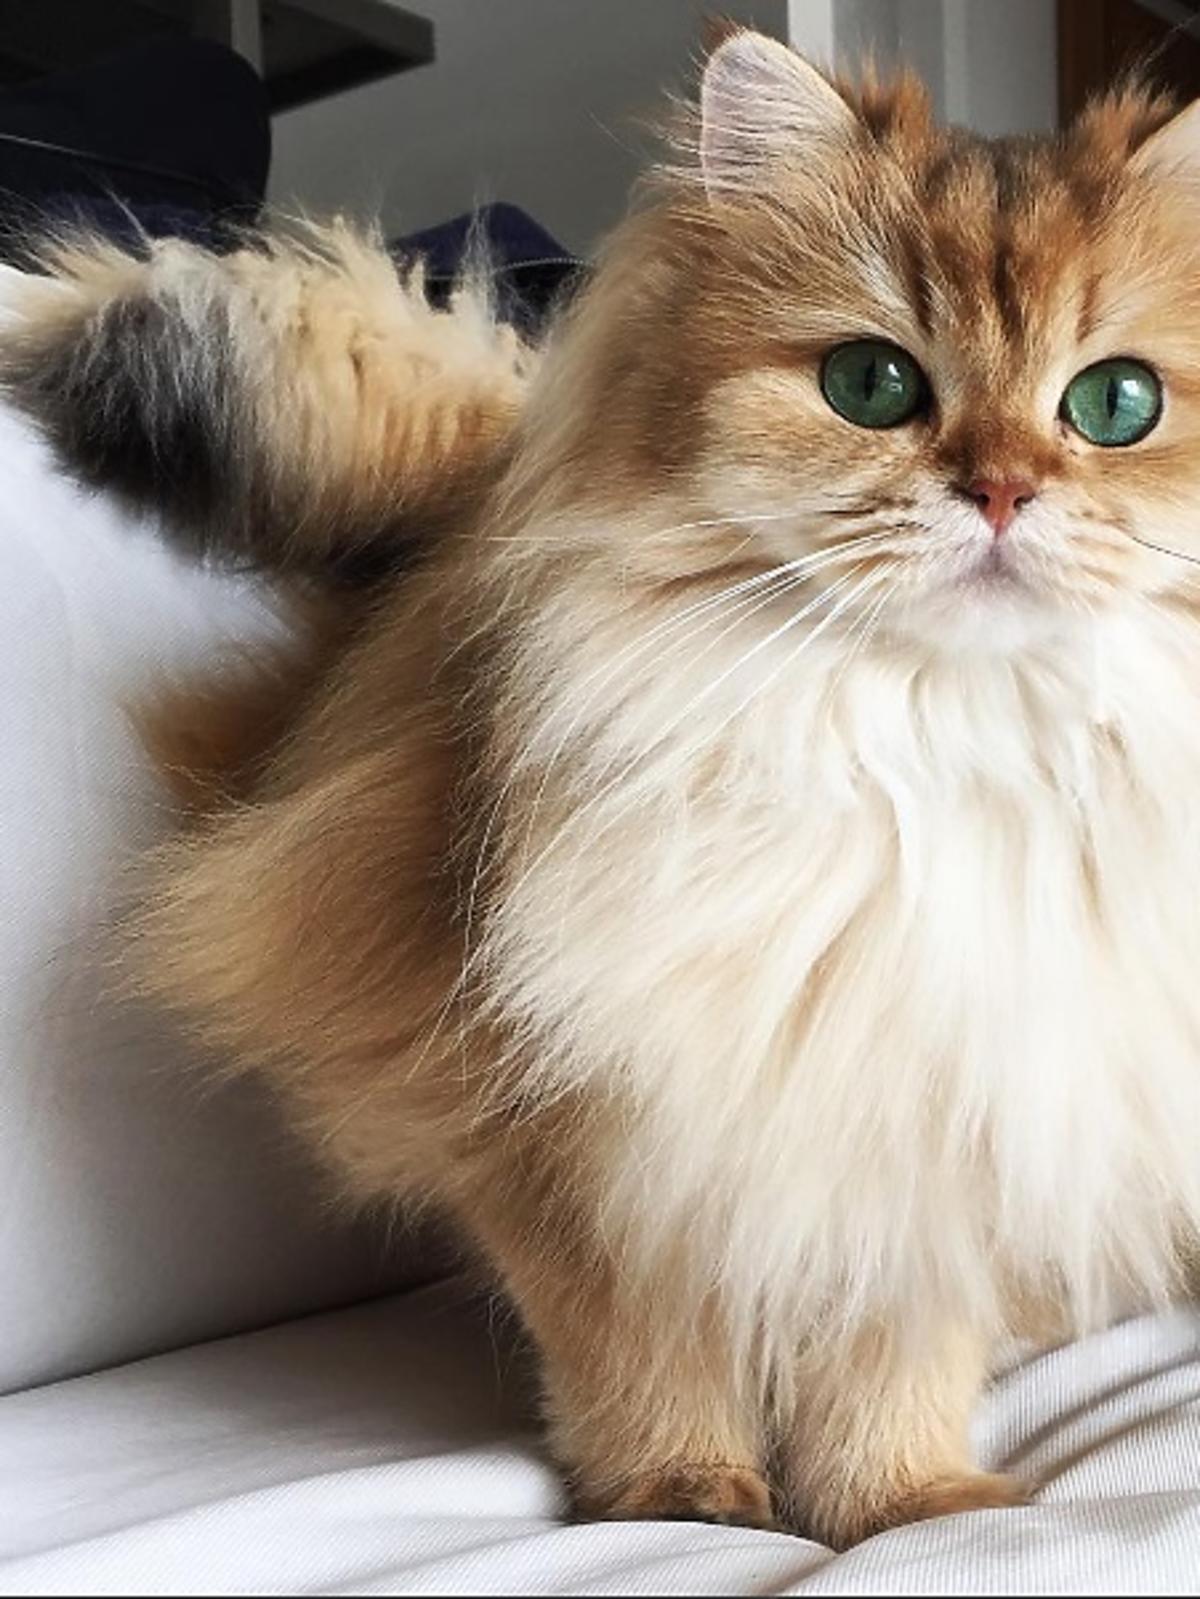 Czy was także urzeknie najbardziej fotogeniczny kot na świecie?